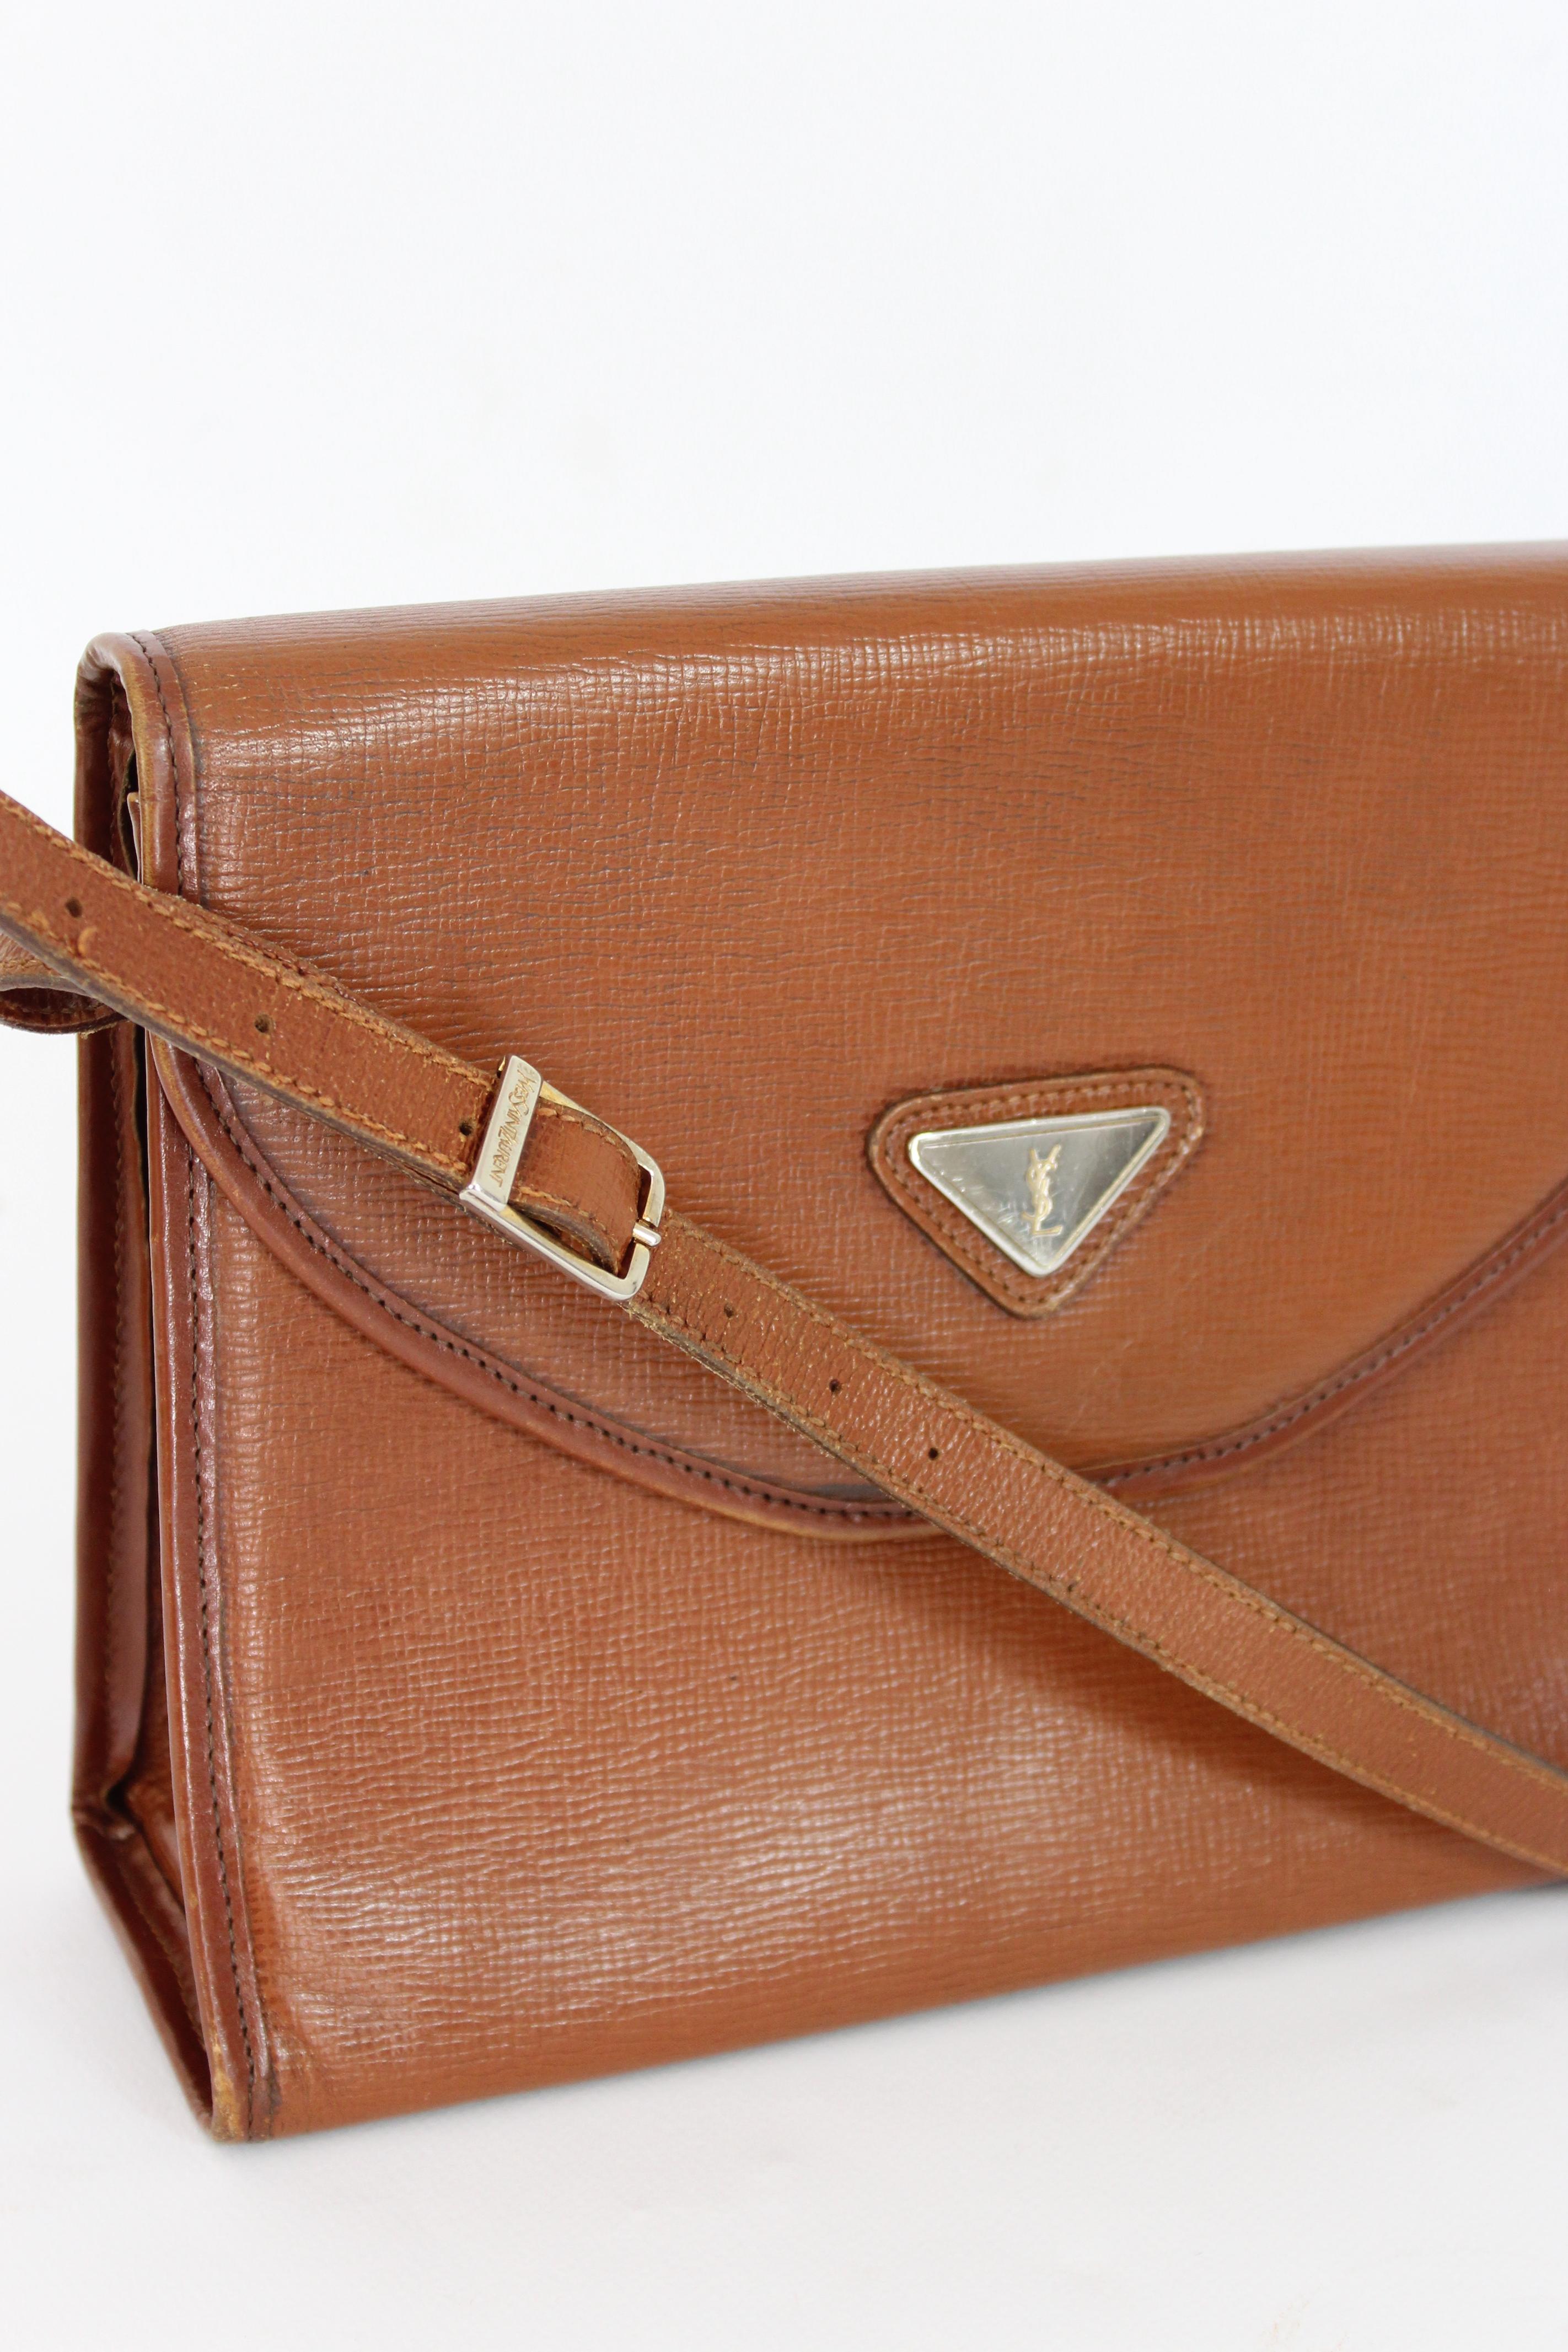 Yves Saint Laurent Brown Leather Shoulder Bag 1980s  1